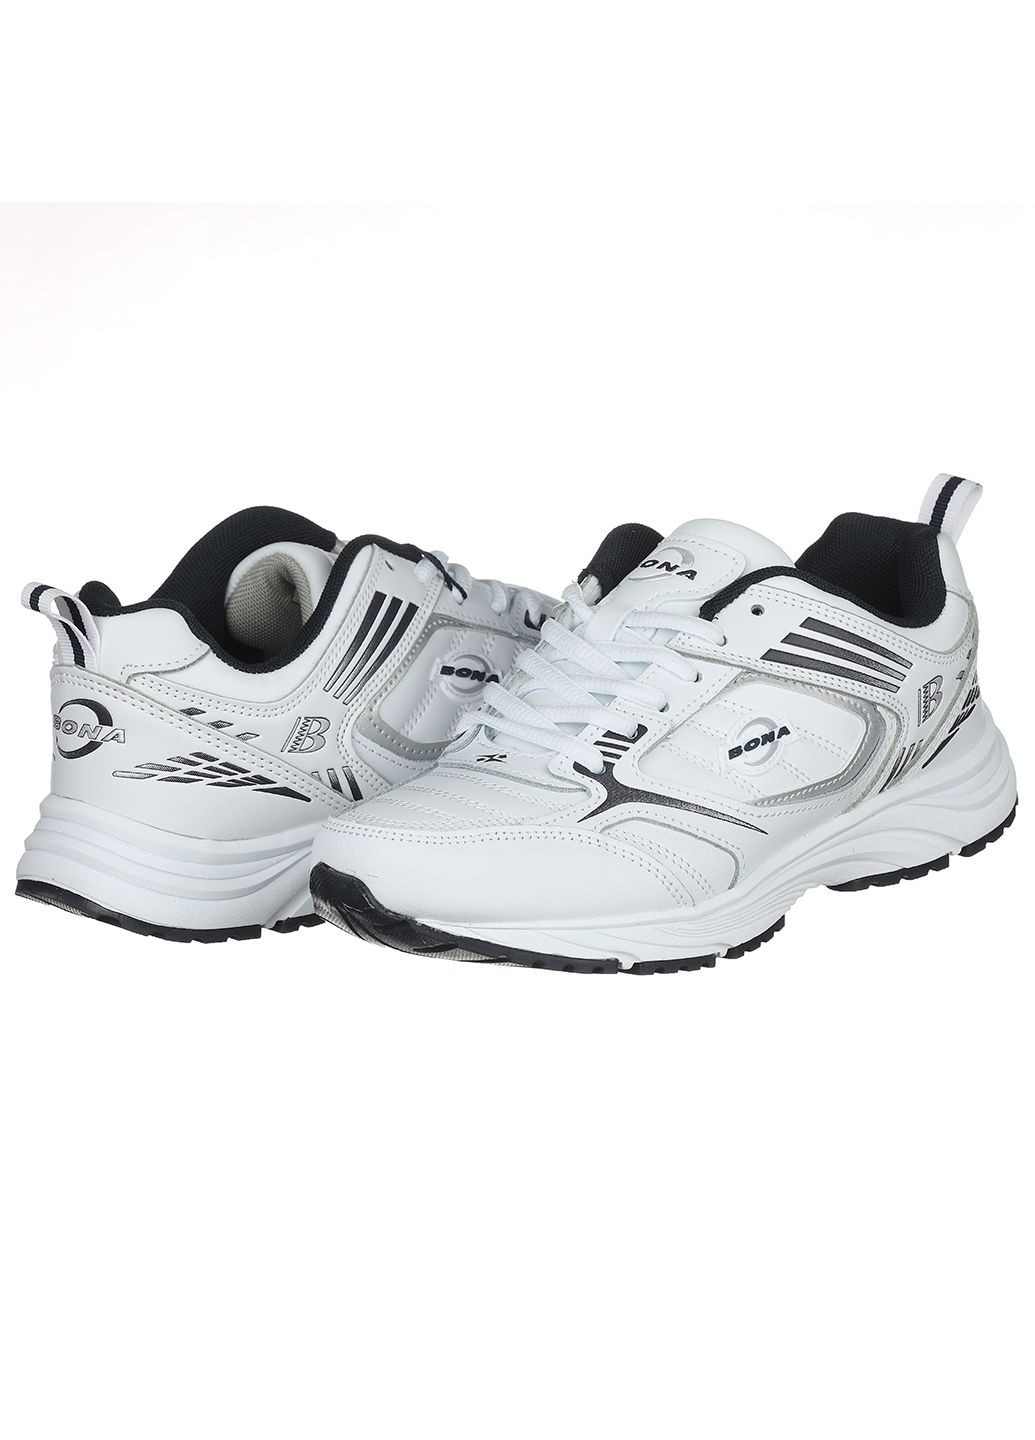 Белые демисезонные женские кроссовки 658a-2 Bona